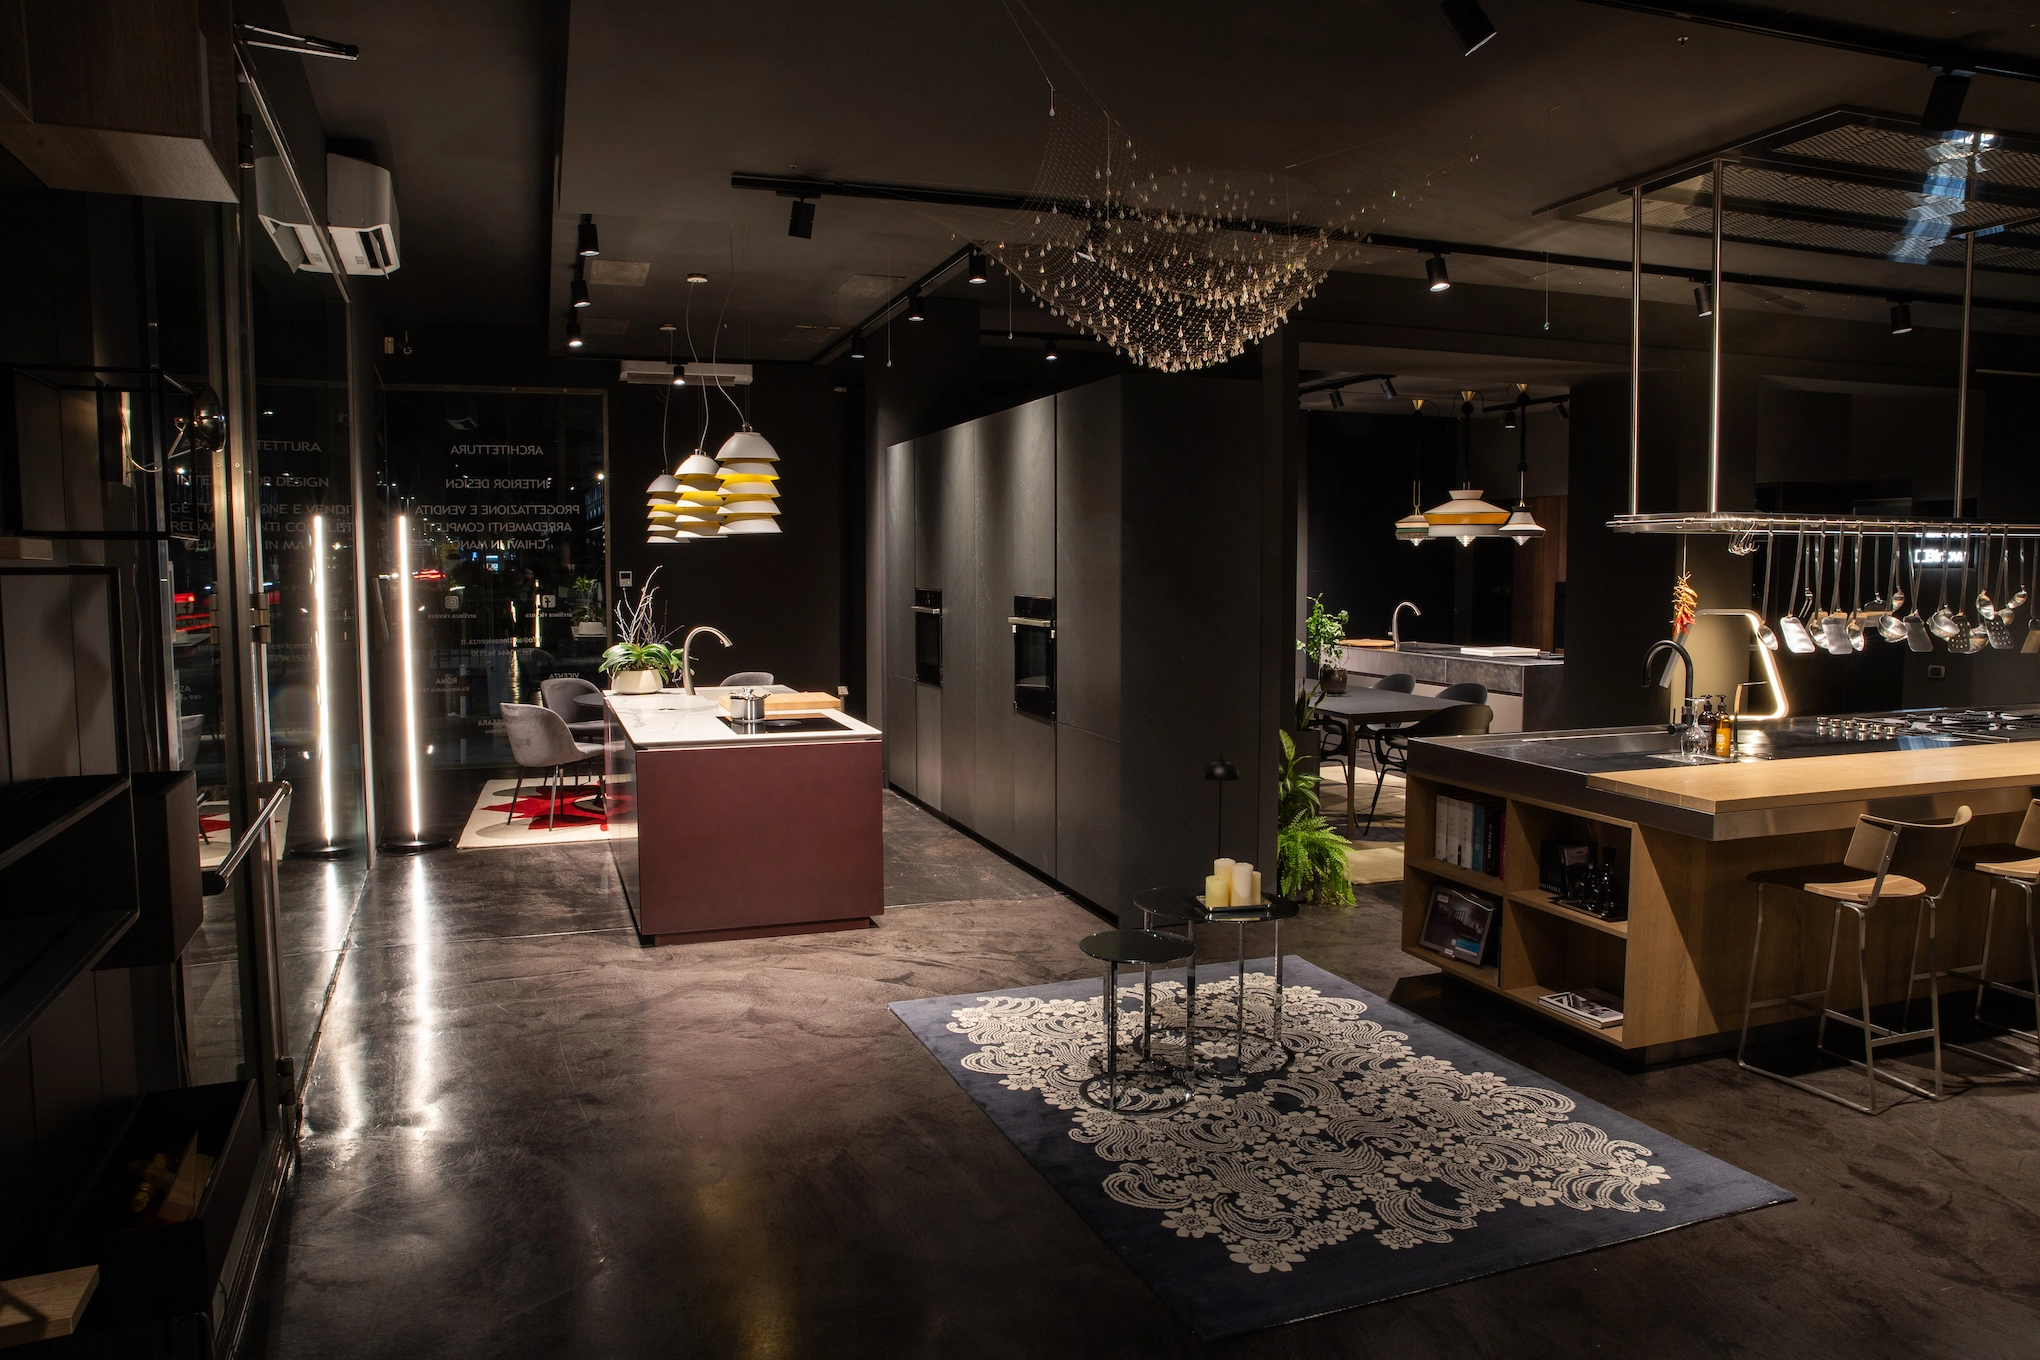 Fotografia dello Show Room Fontana Cucine e Design. La modernità e i toni scuri dell'arredamento rendono l'ambiente estremamente elegante.